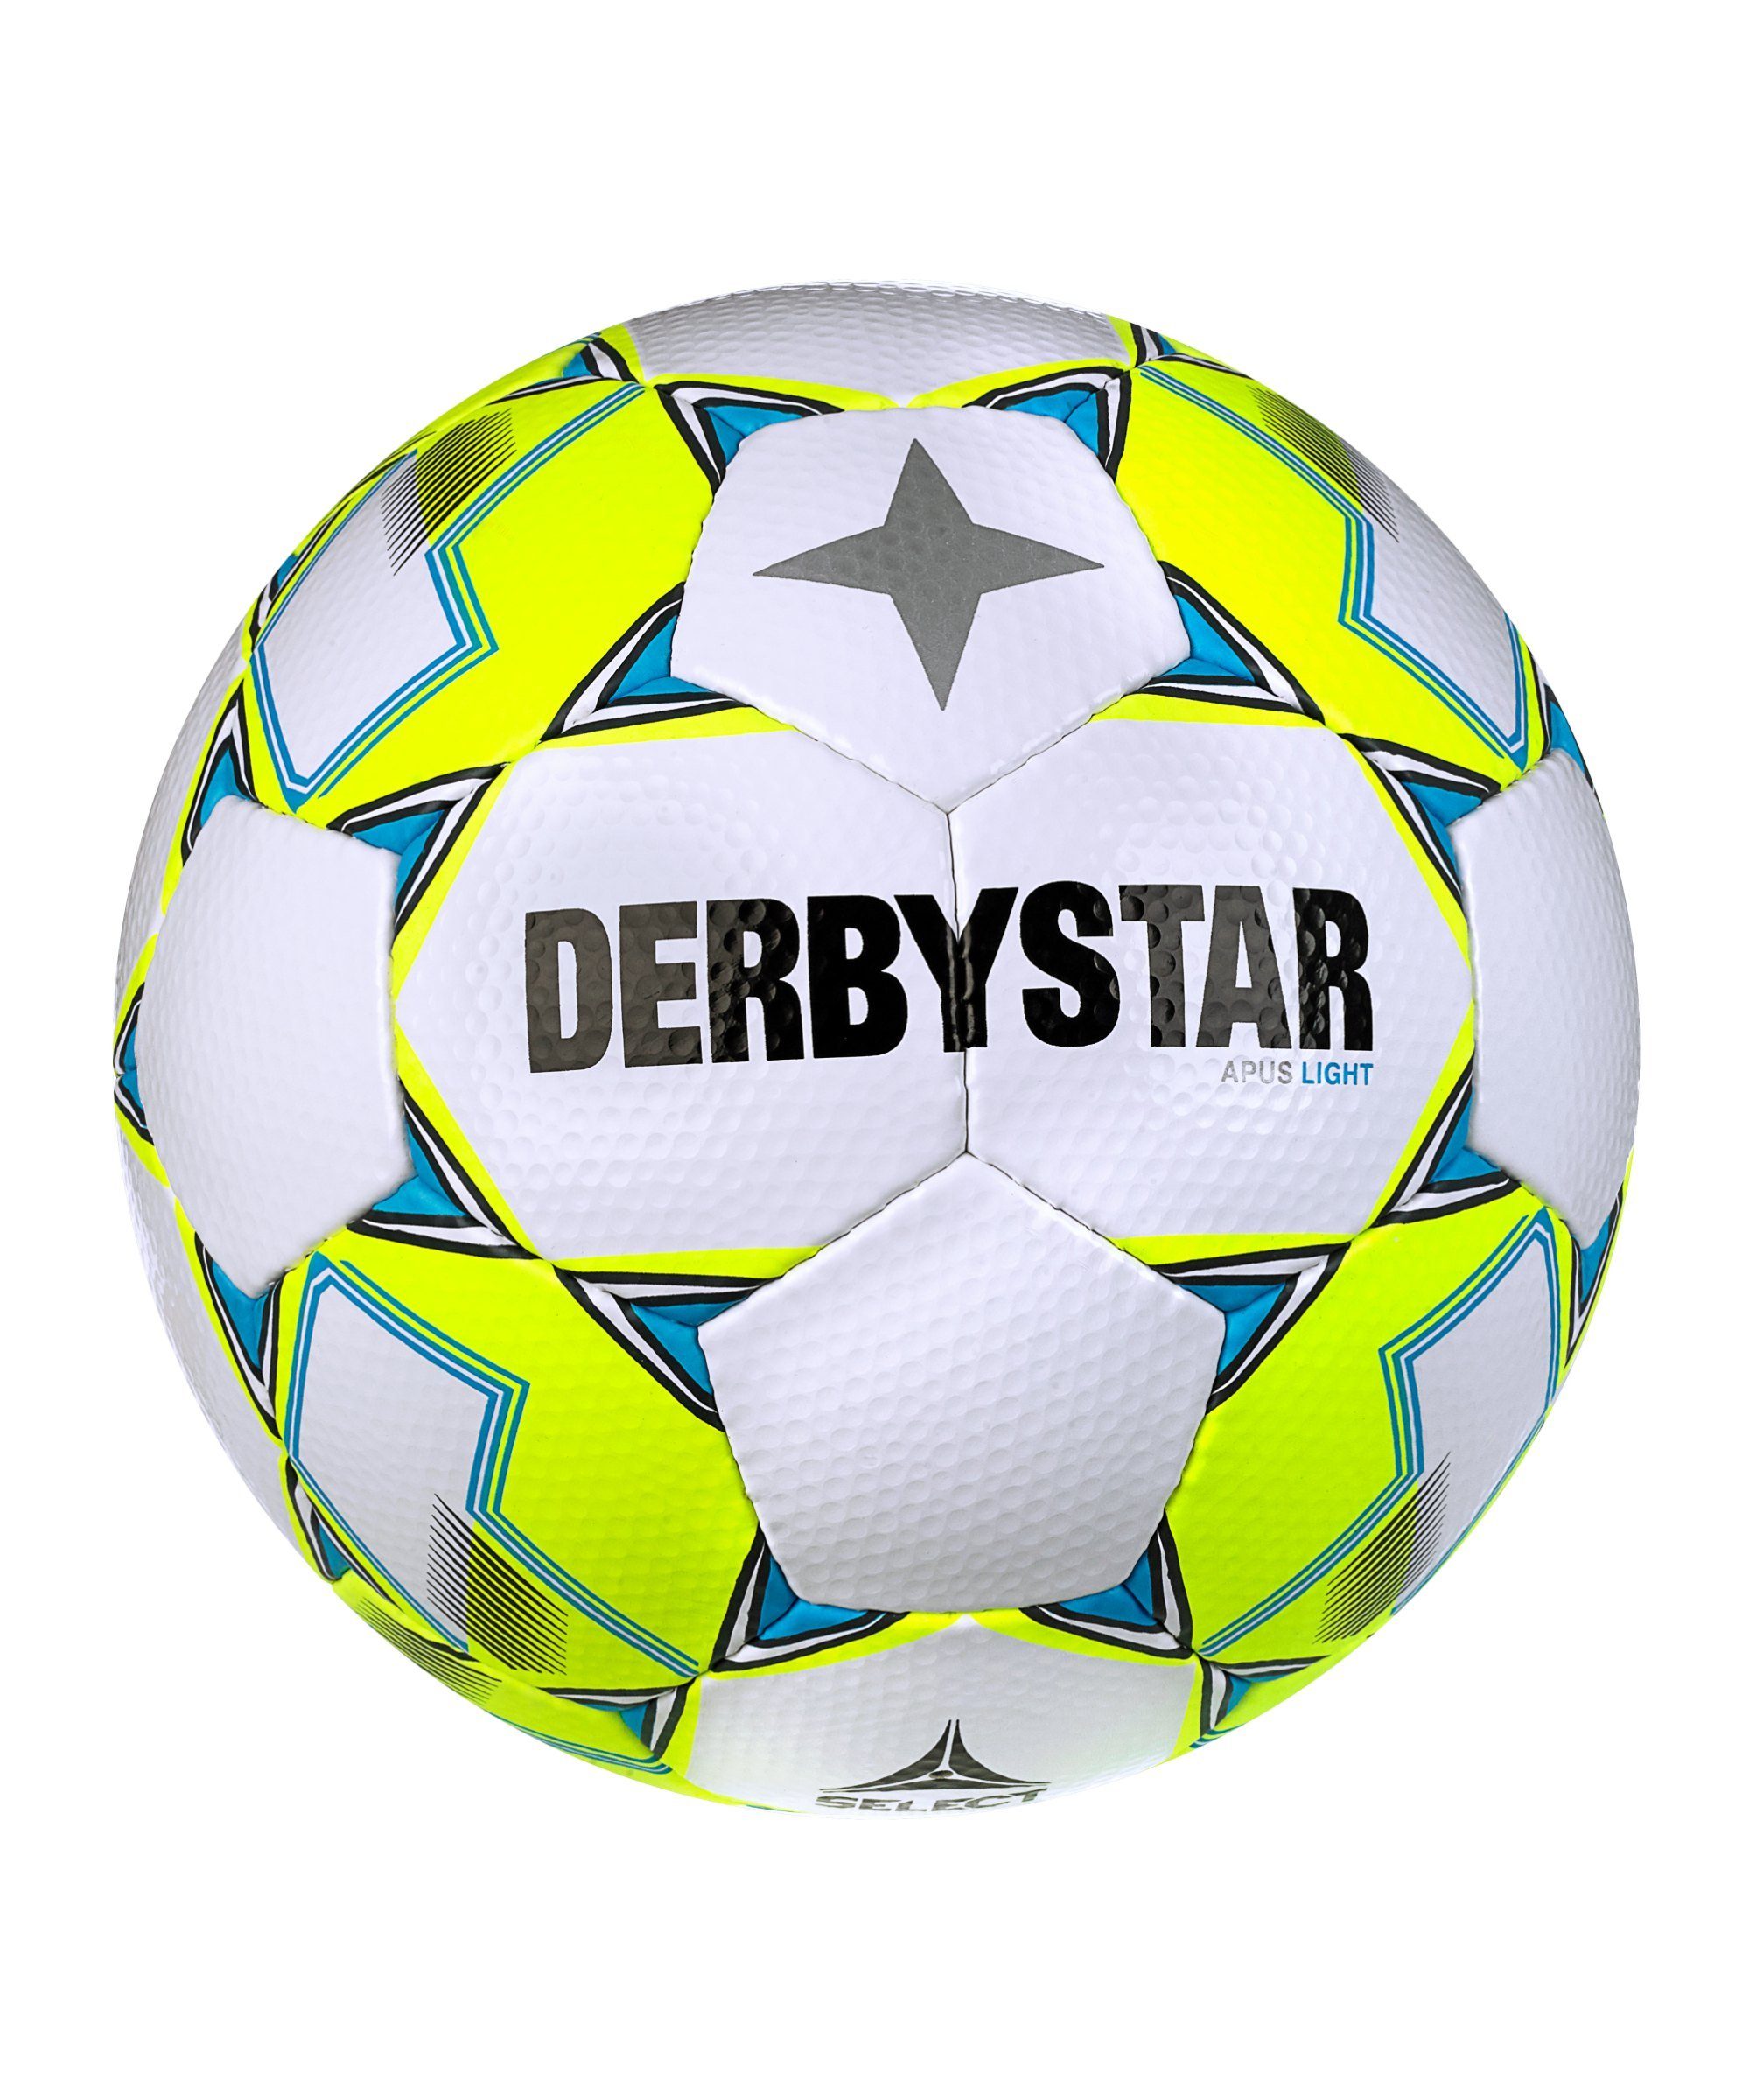 Derbystar Fußball FB-APUS LIGHT v23